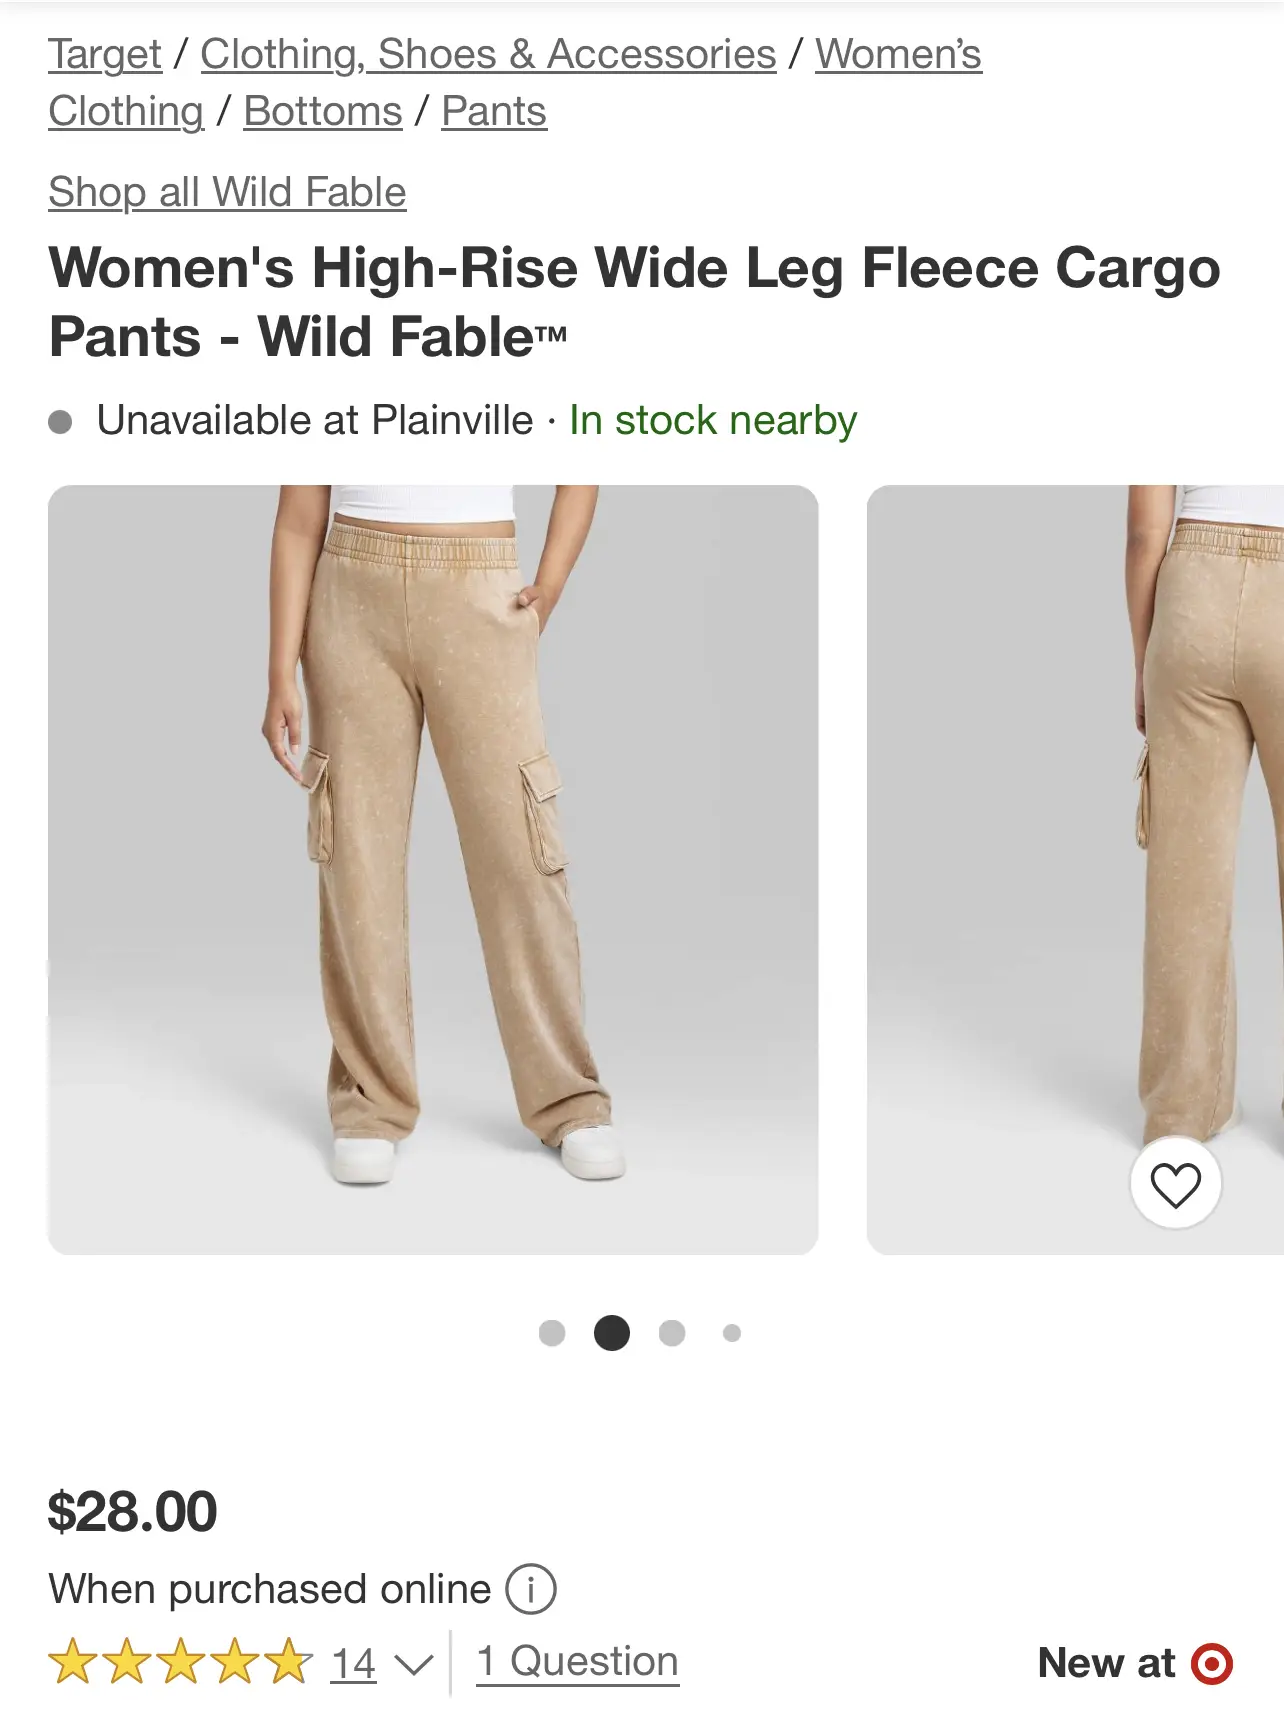 Women's Low-Rise Parachute Cargo Pants - Wild Fable